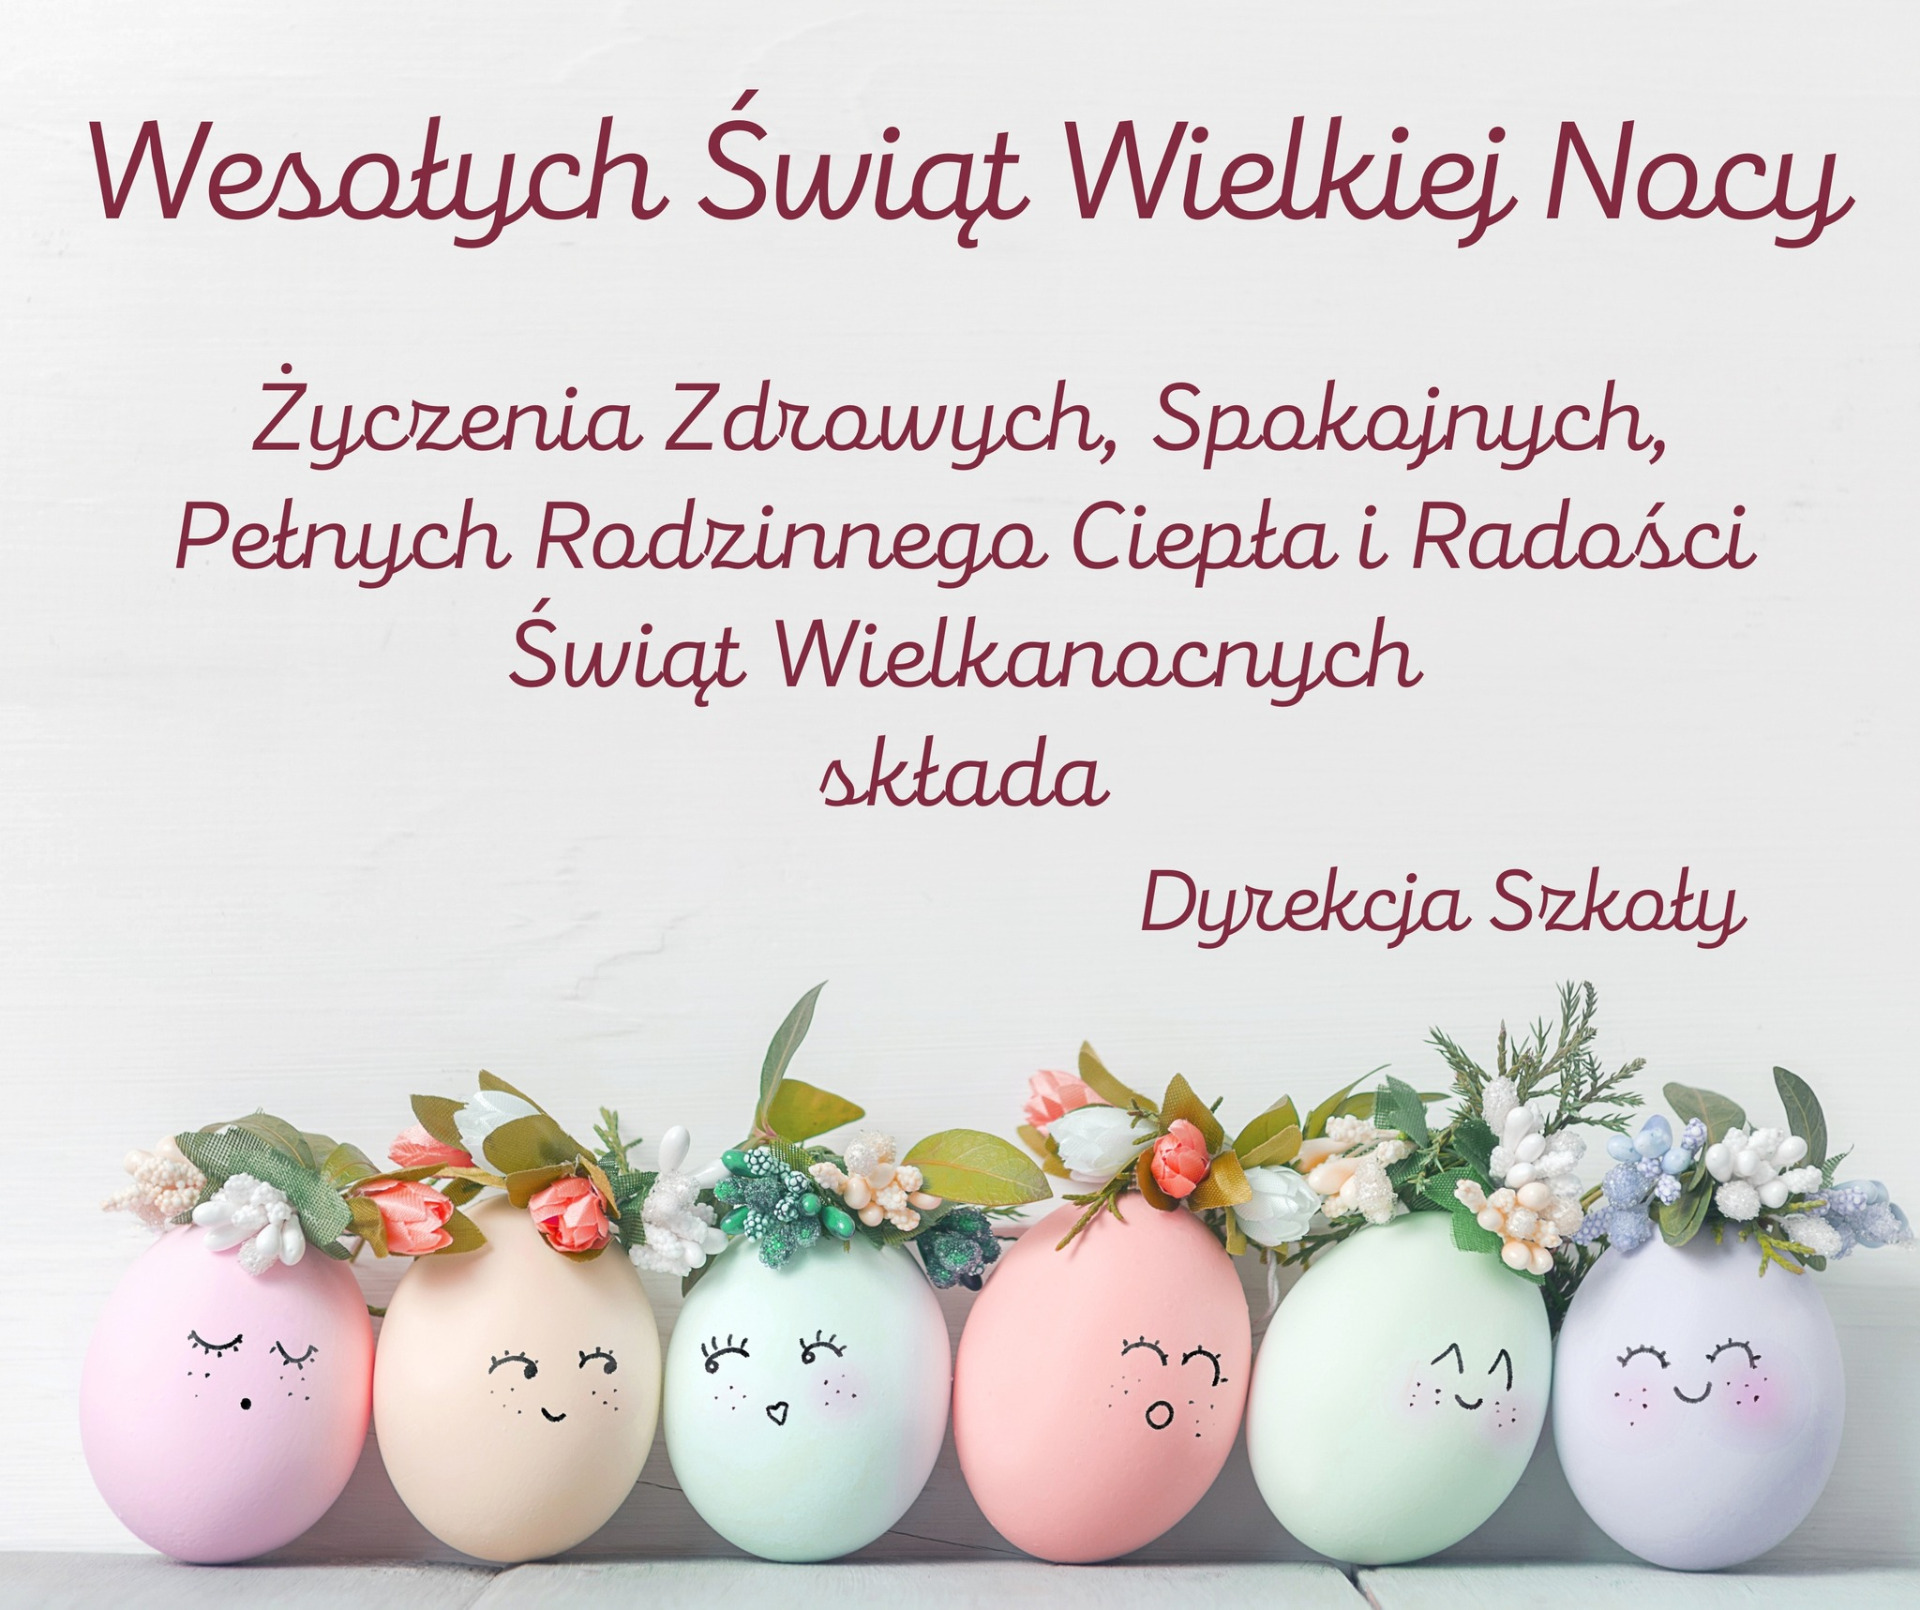 Życzenia zdrowych, spokojnych, pełnych rodzinnego ciepła i radości Świąt Wielkanocnych składa Dyrekcja Szkoły